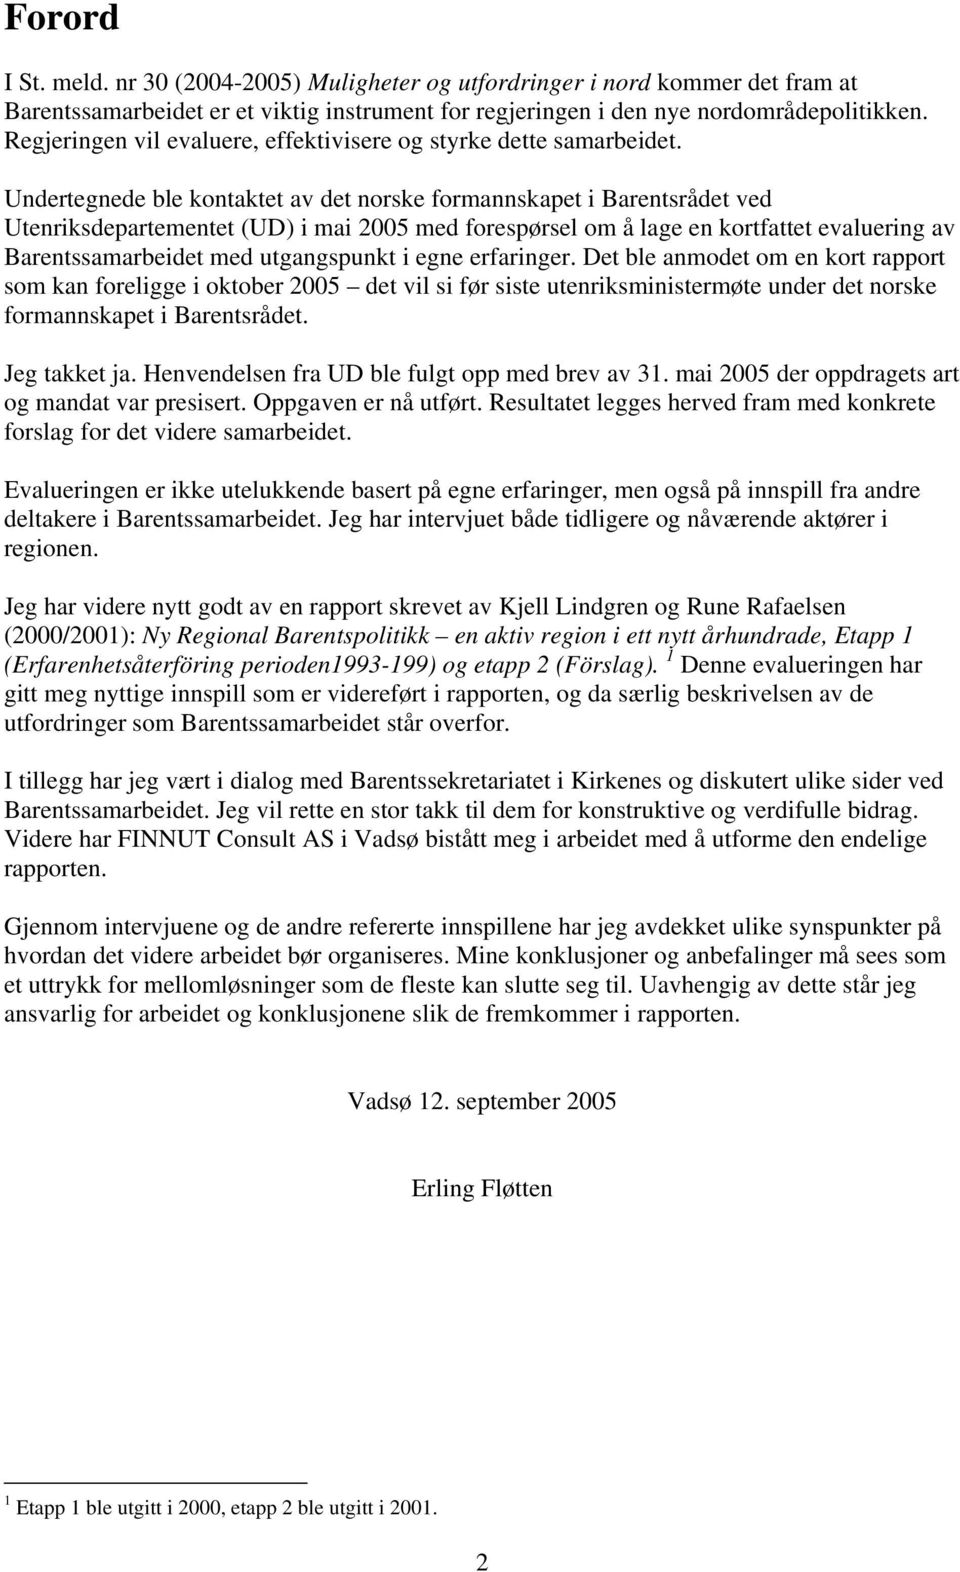 Undertegnede ble kontaktet av det norske formannskapet i Barentsrådet ved Utenriksdepartementet (UD) i mai 2005 med forespørsel om å lage en kortfattet evaluering av Barentssamarbeidet med